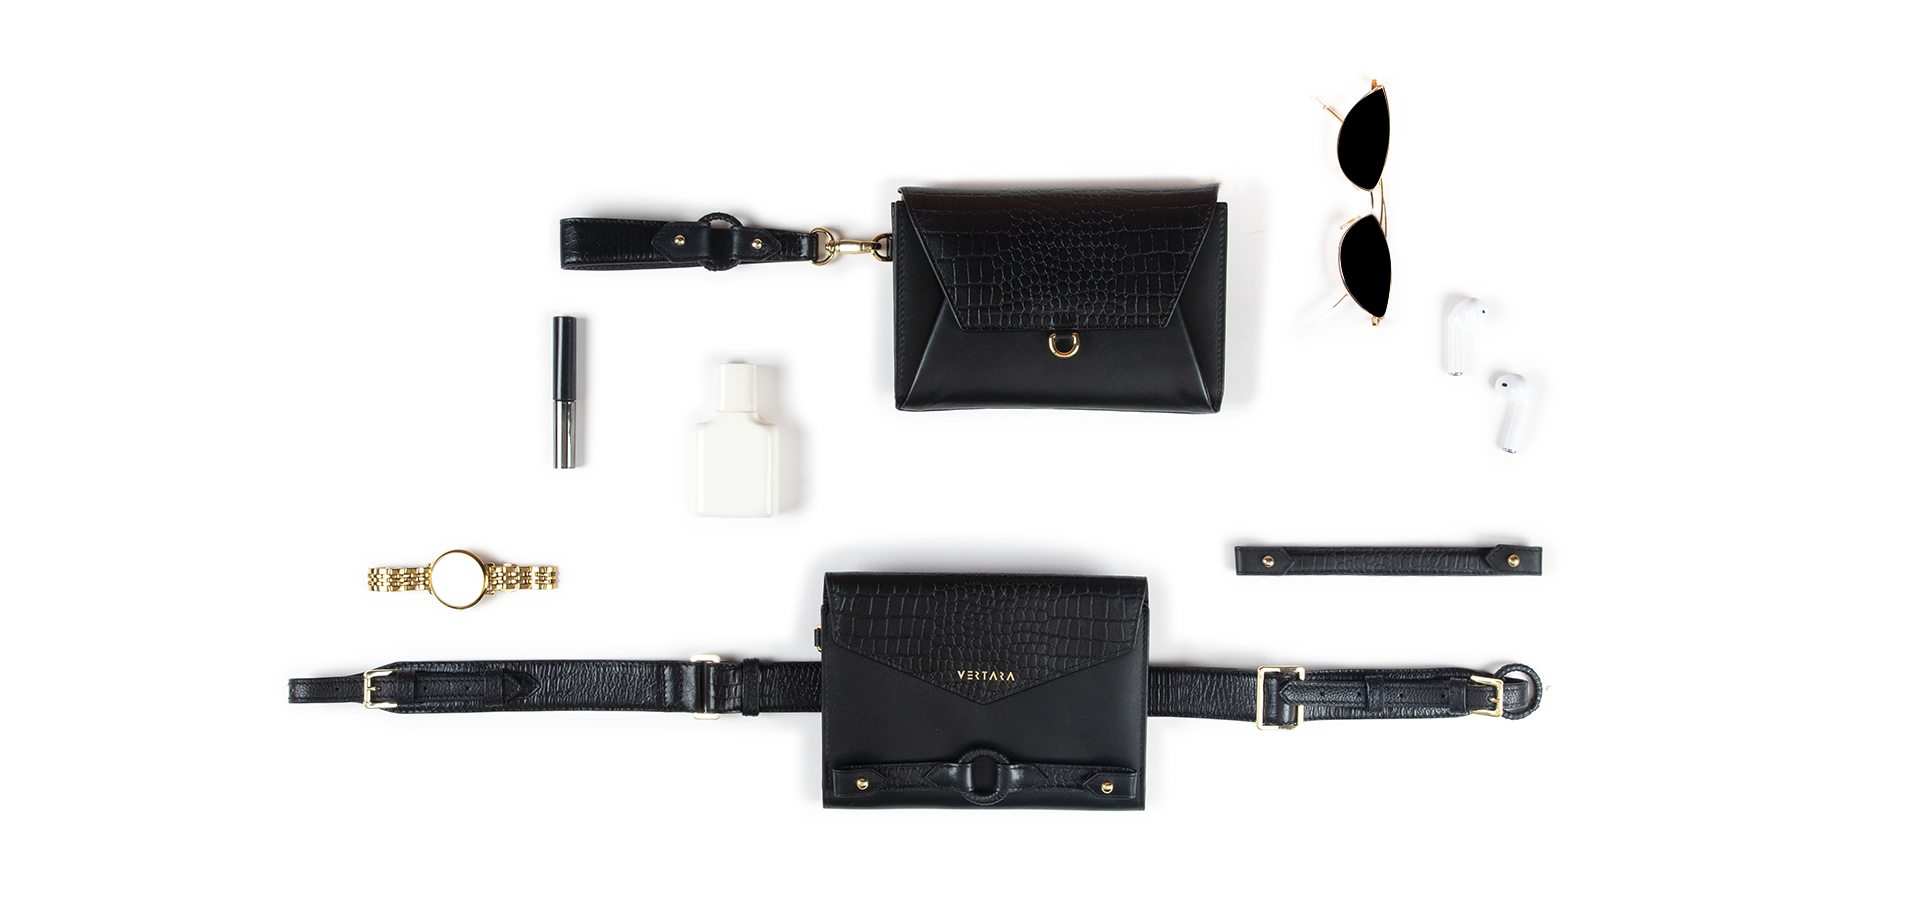 Ember Belt Bag-clutch-wallet-wristlet with Ember Bracelets in Black Leather fits cards, cash & phone.